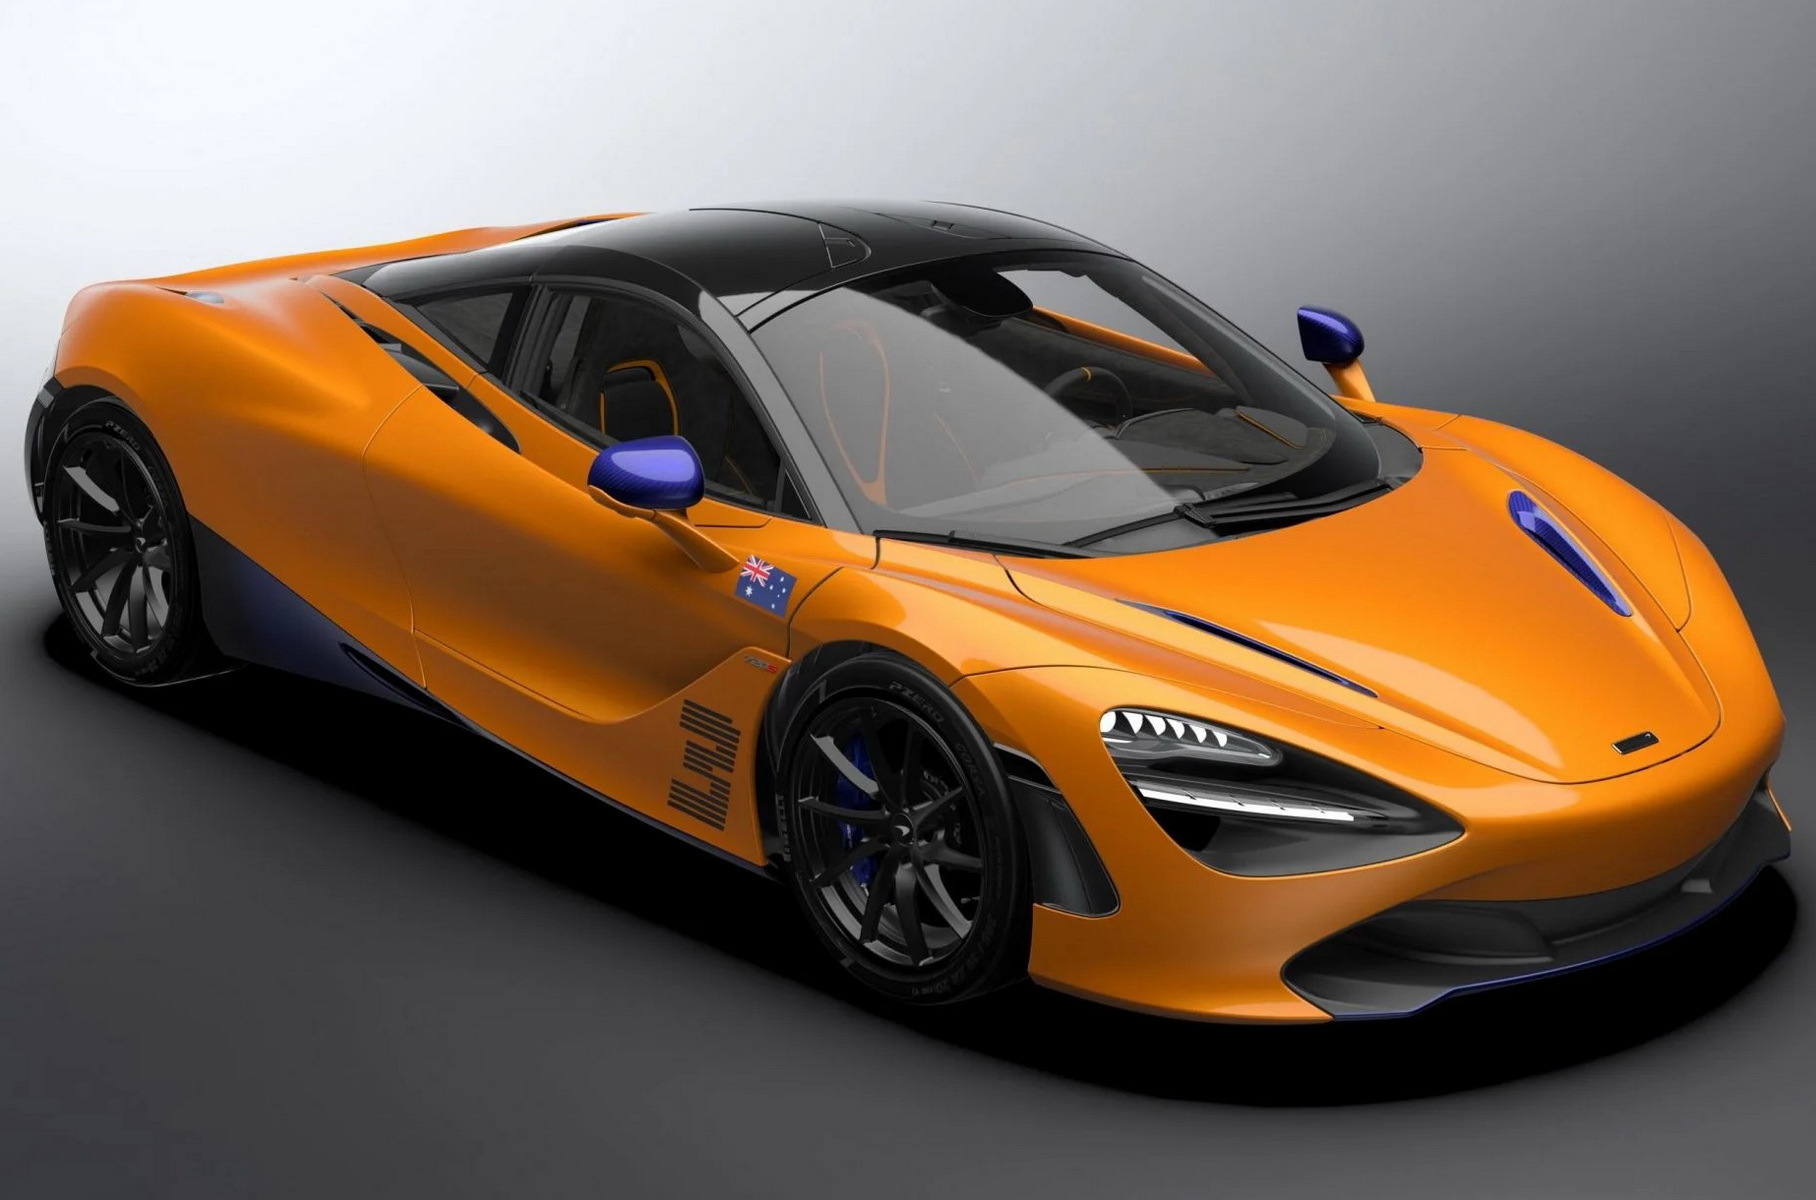 McLaren посвятил новую спецверсию 720S гонщику Формулы-1